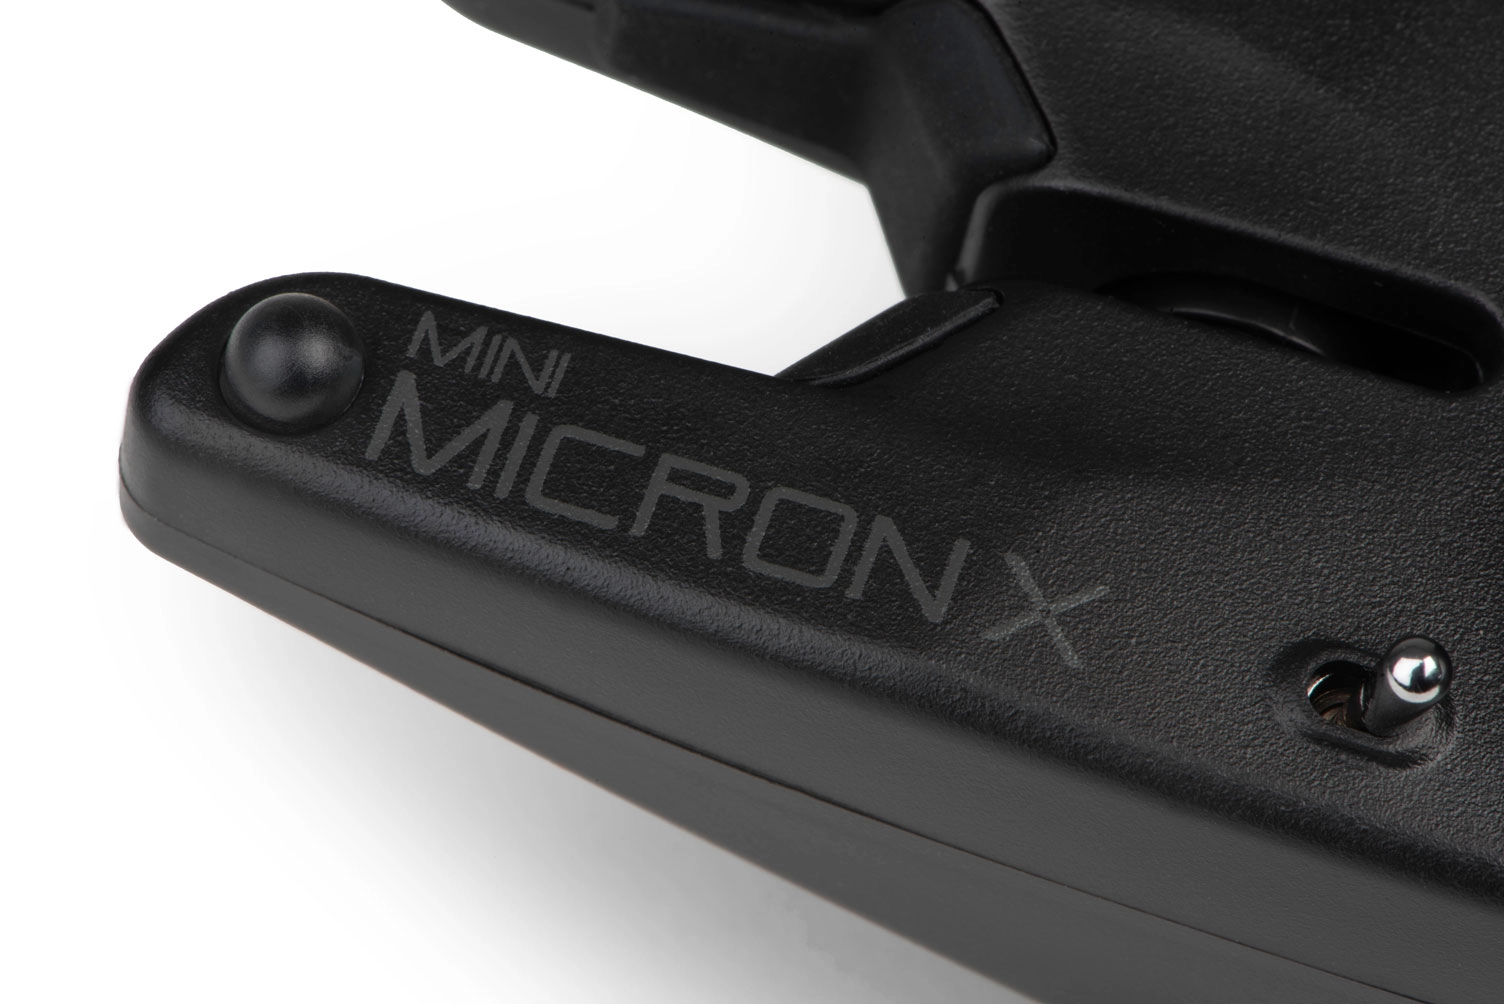 FOX Mini Micron X 4 Rod Set